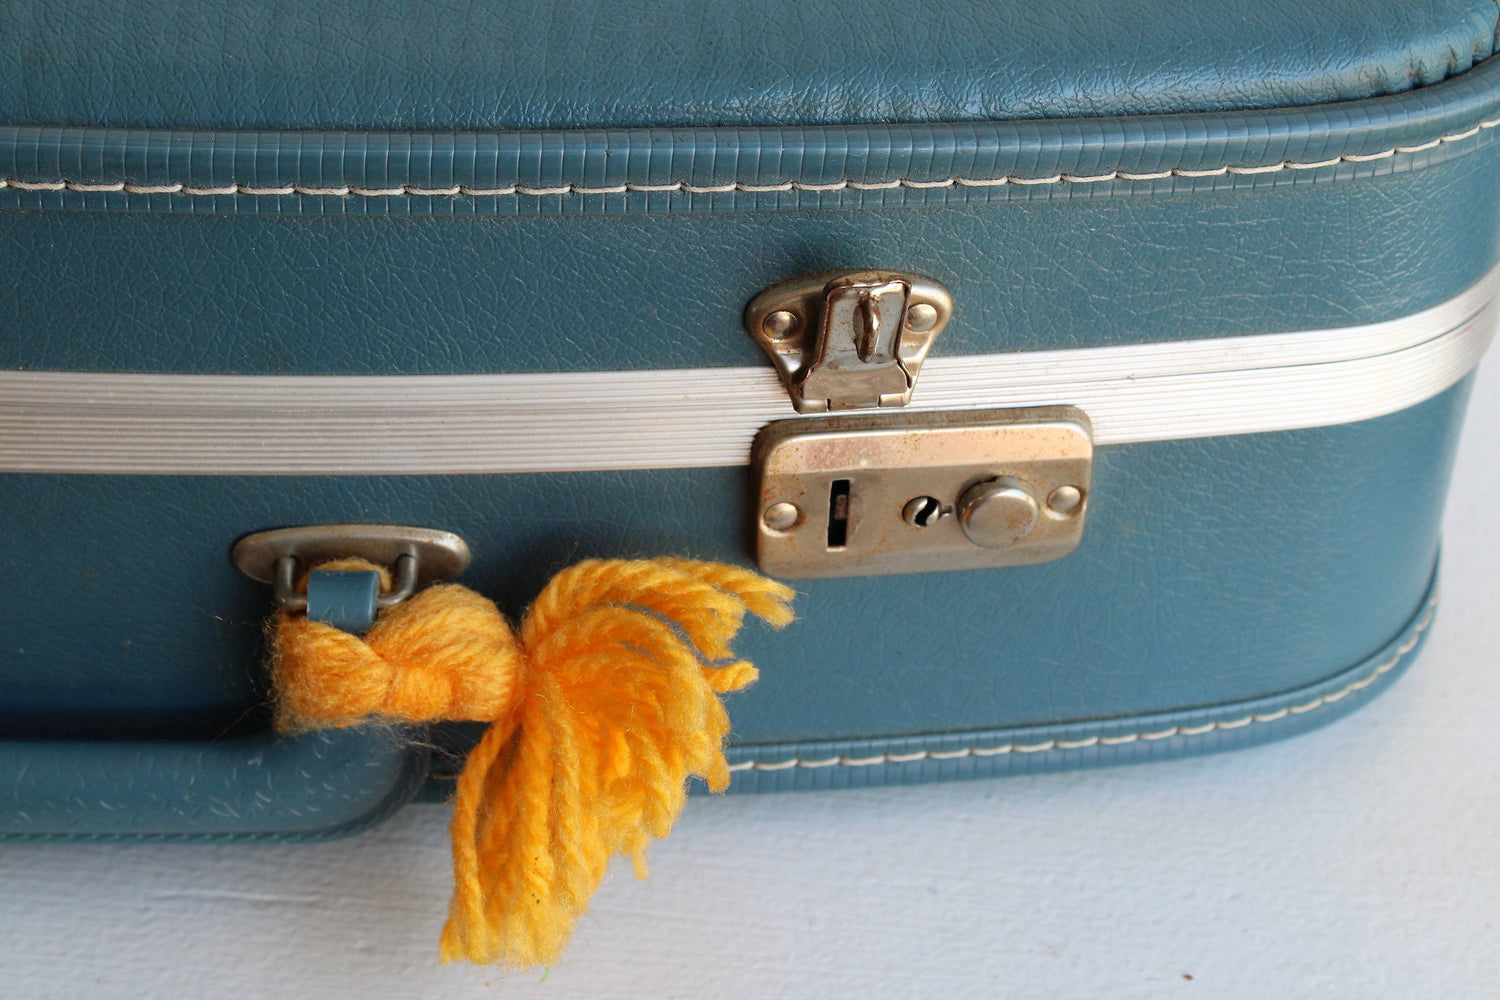 Vintage 1960s Blue Suitcase